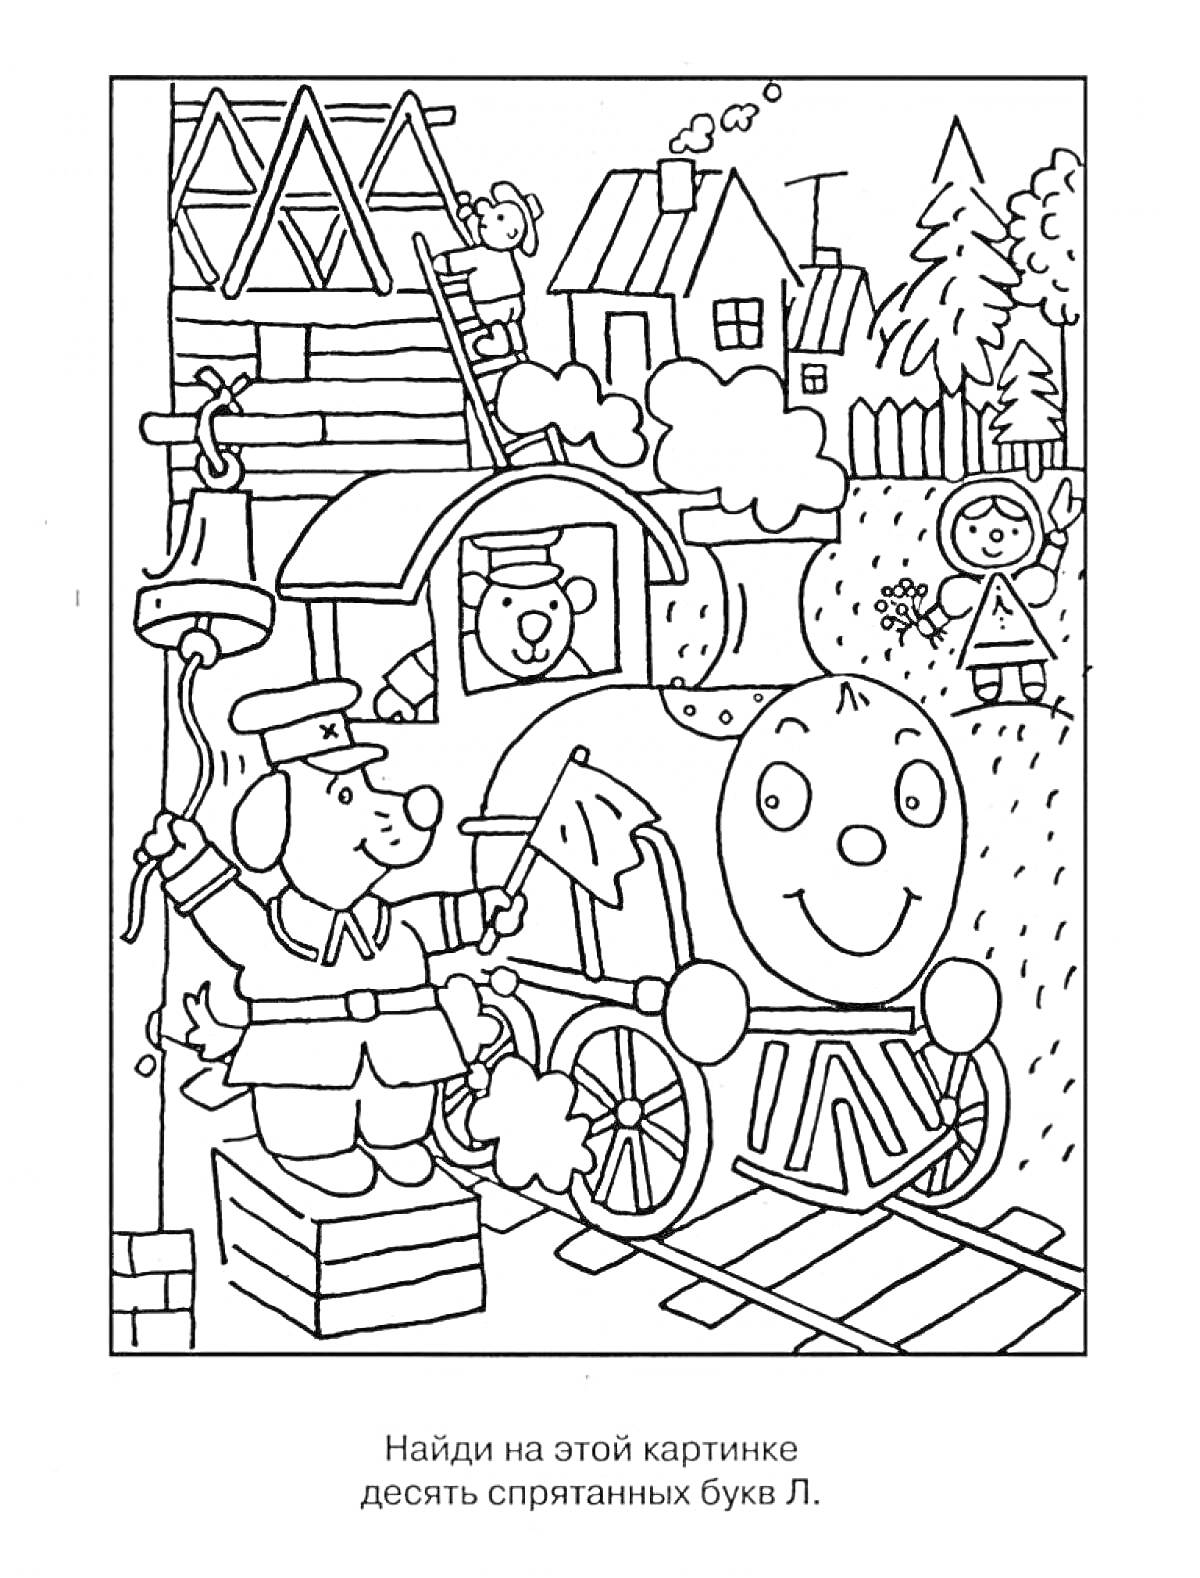 Раскраска Раскраска с поездом, собаками, мальчиком в шляпе, домами, деревьями и дымом. Найди десять спрятанных букв Л.